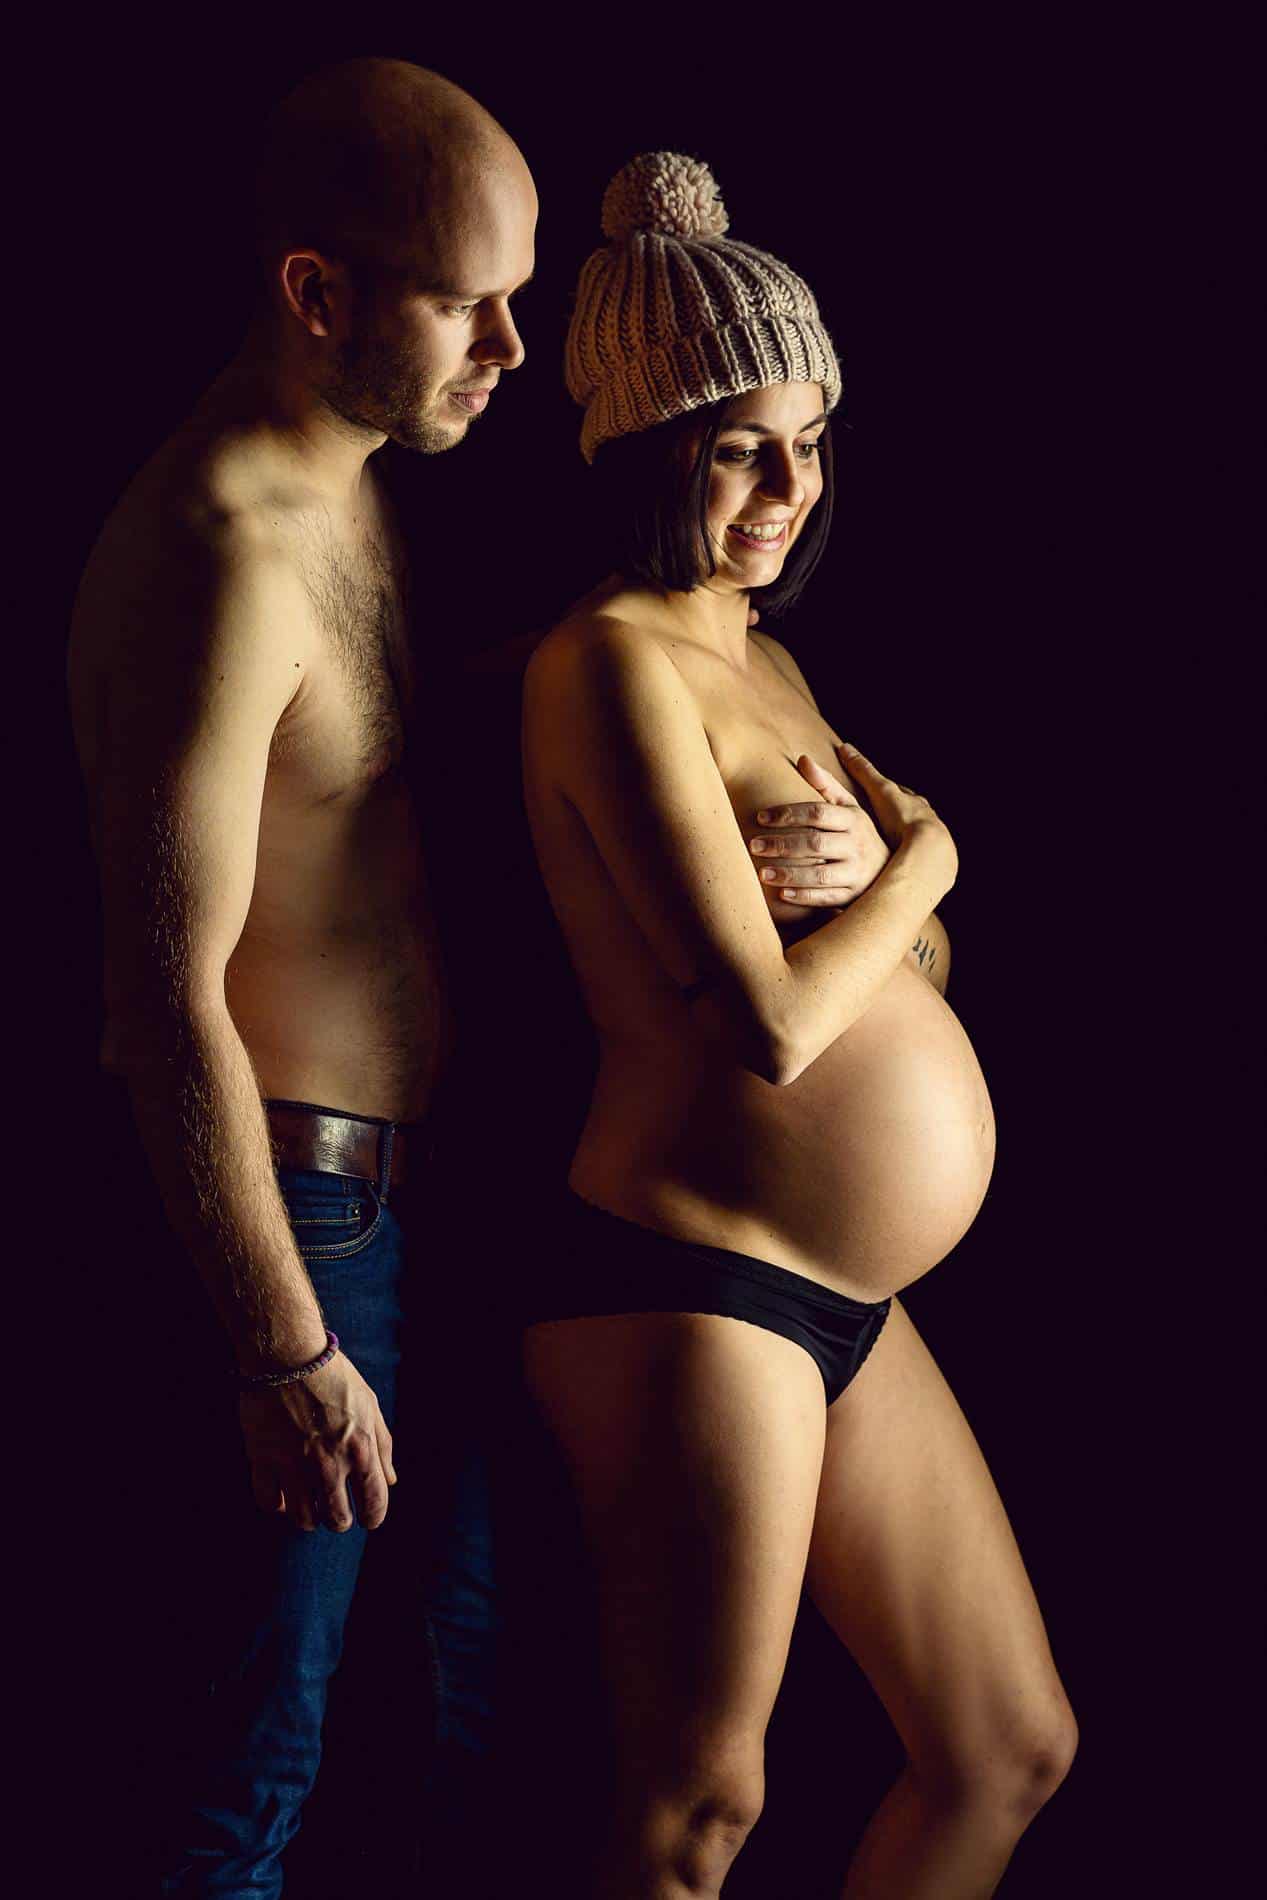 Sesión de fotos para embarazadas - Fotografía premamá - sesión de fotos embarazado desnuda en pareja